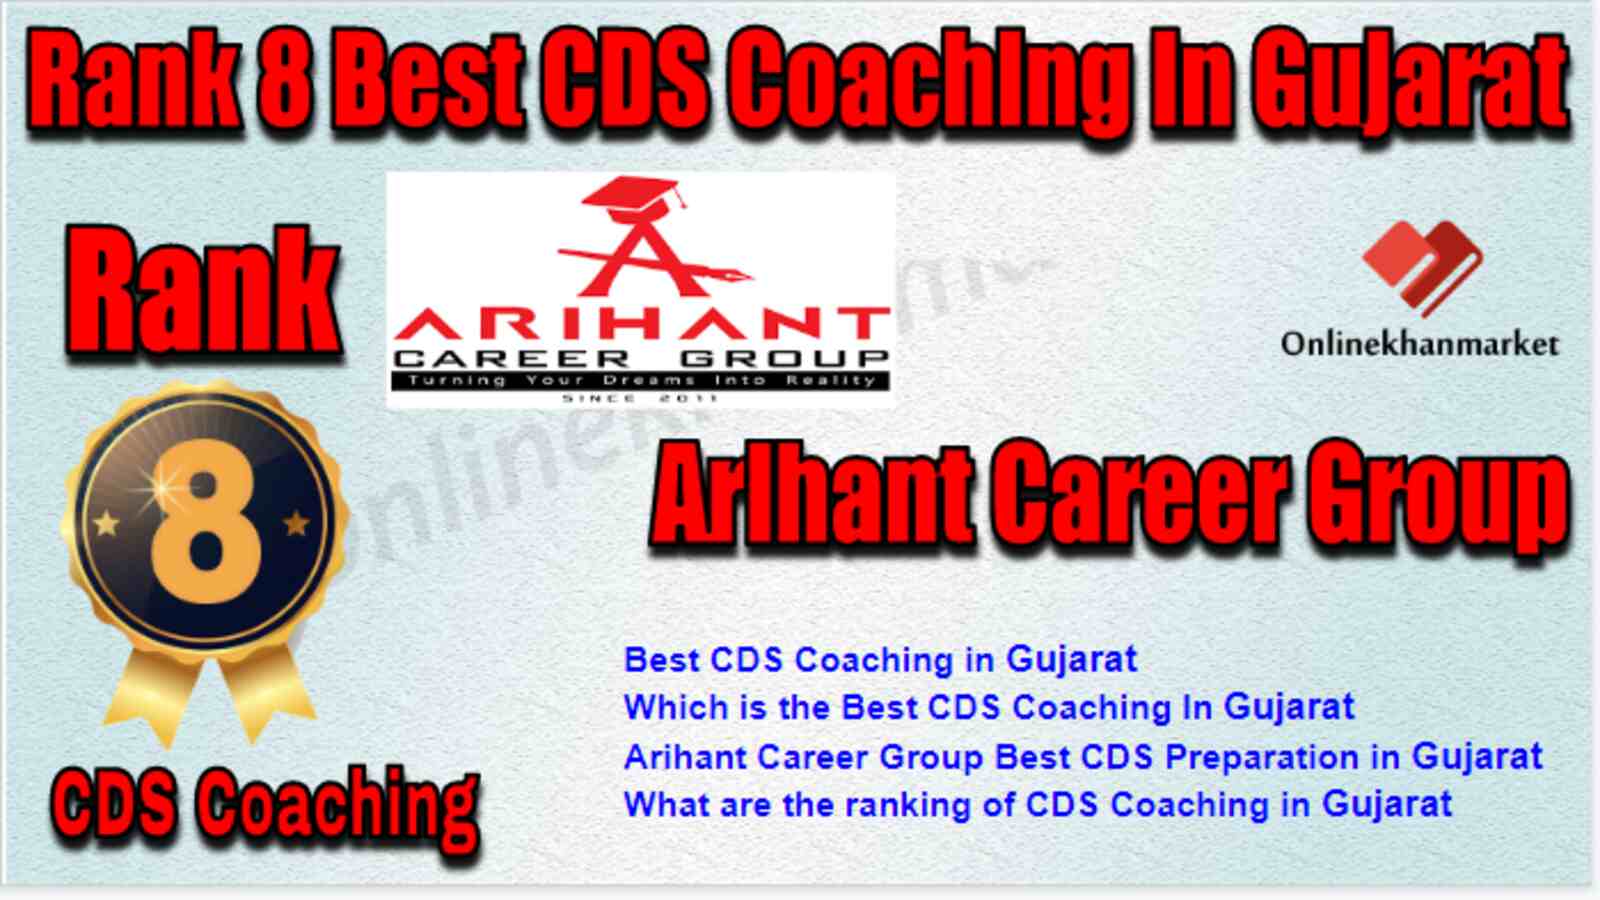 Rank 8 Best CDS Coaching in Gujarat